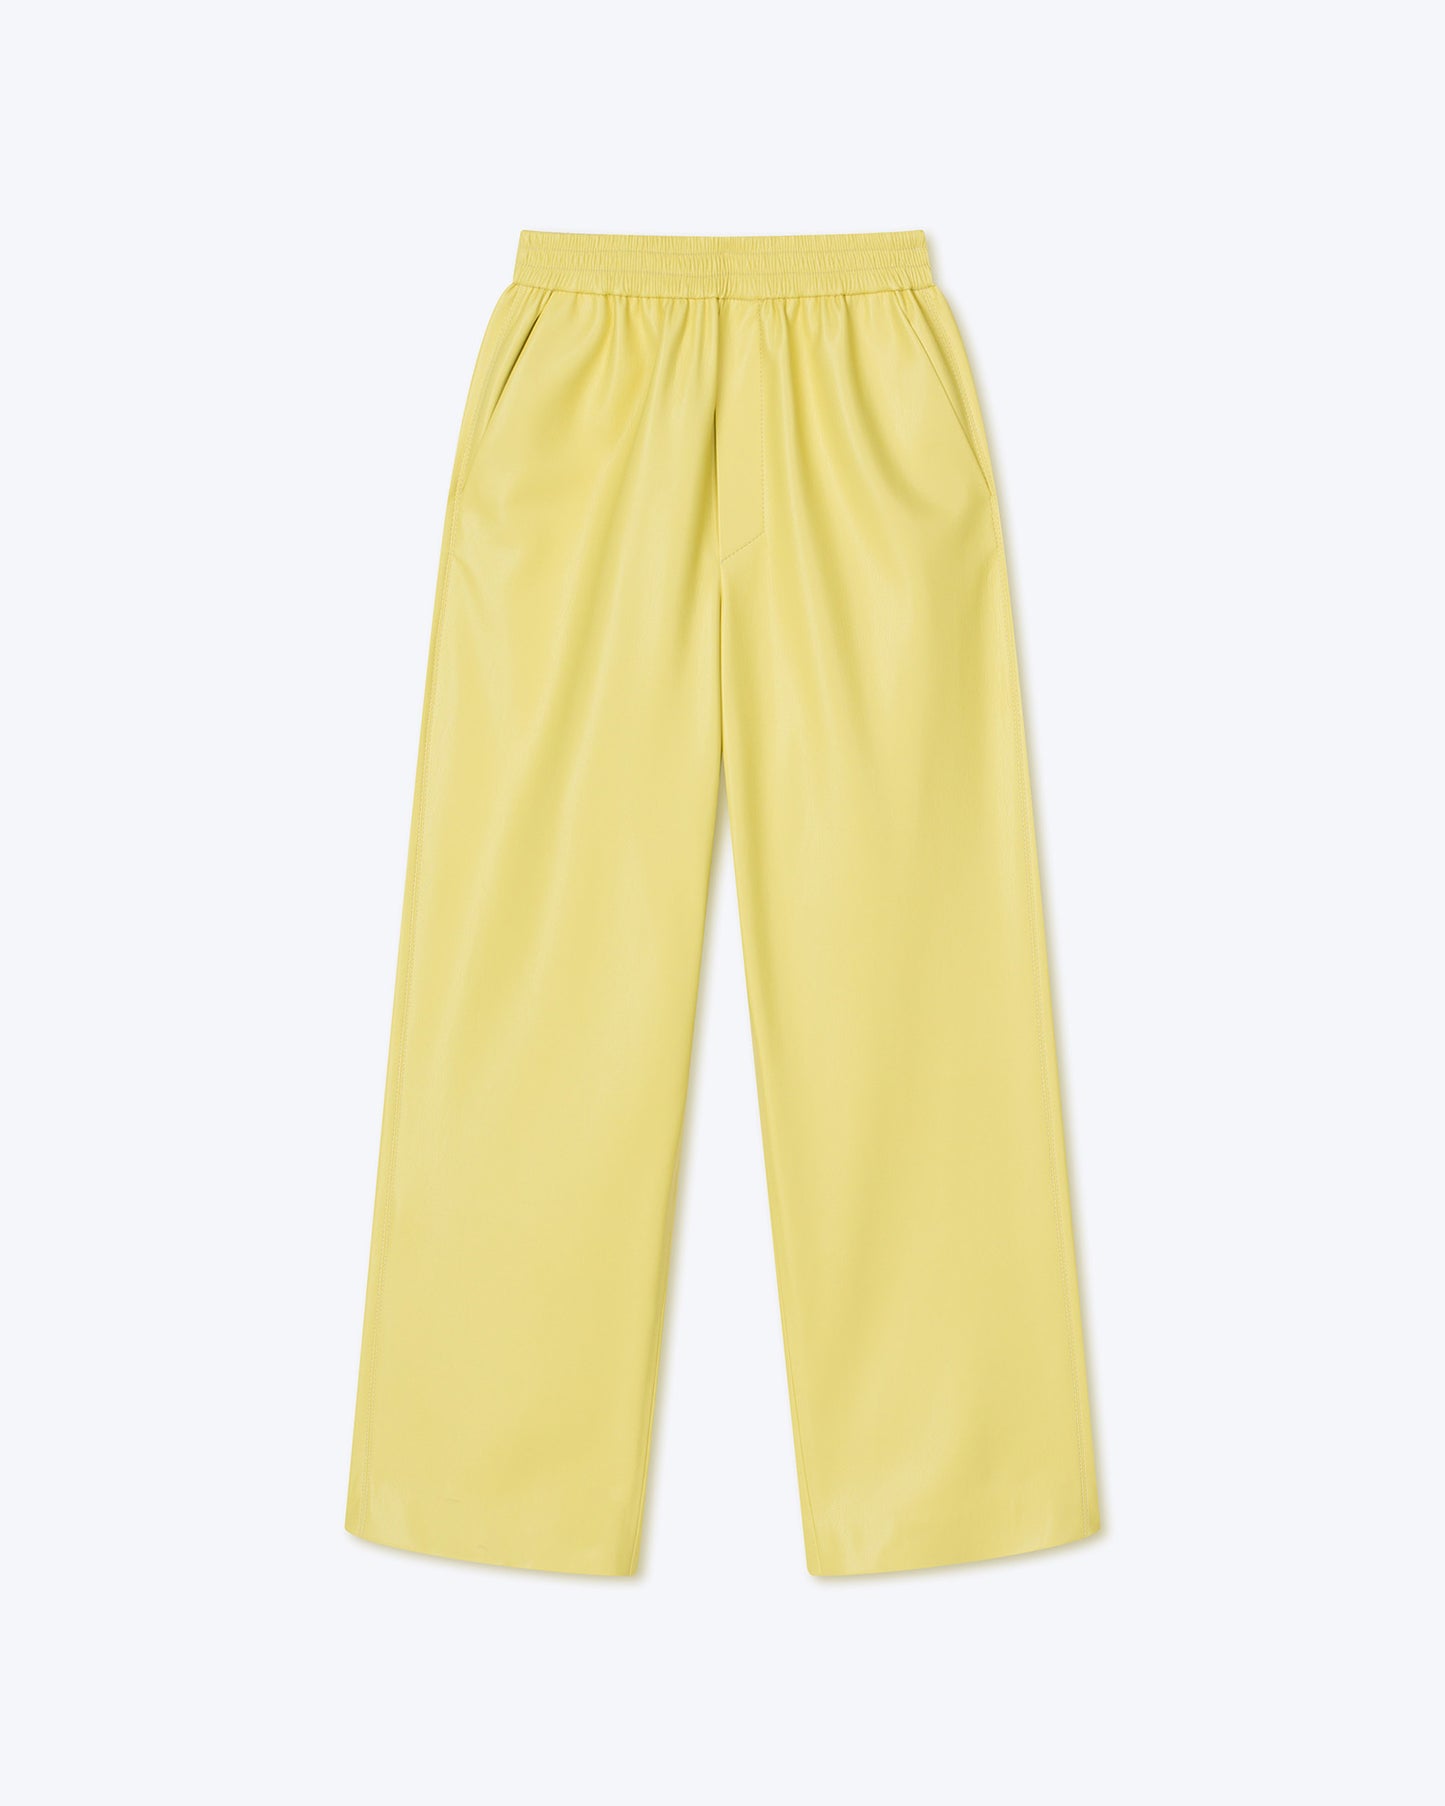 Lorca - Okobor™ Alt-Leather Pants - Yellow